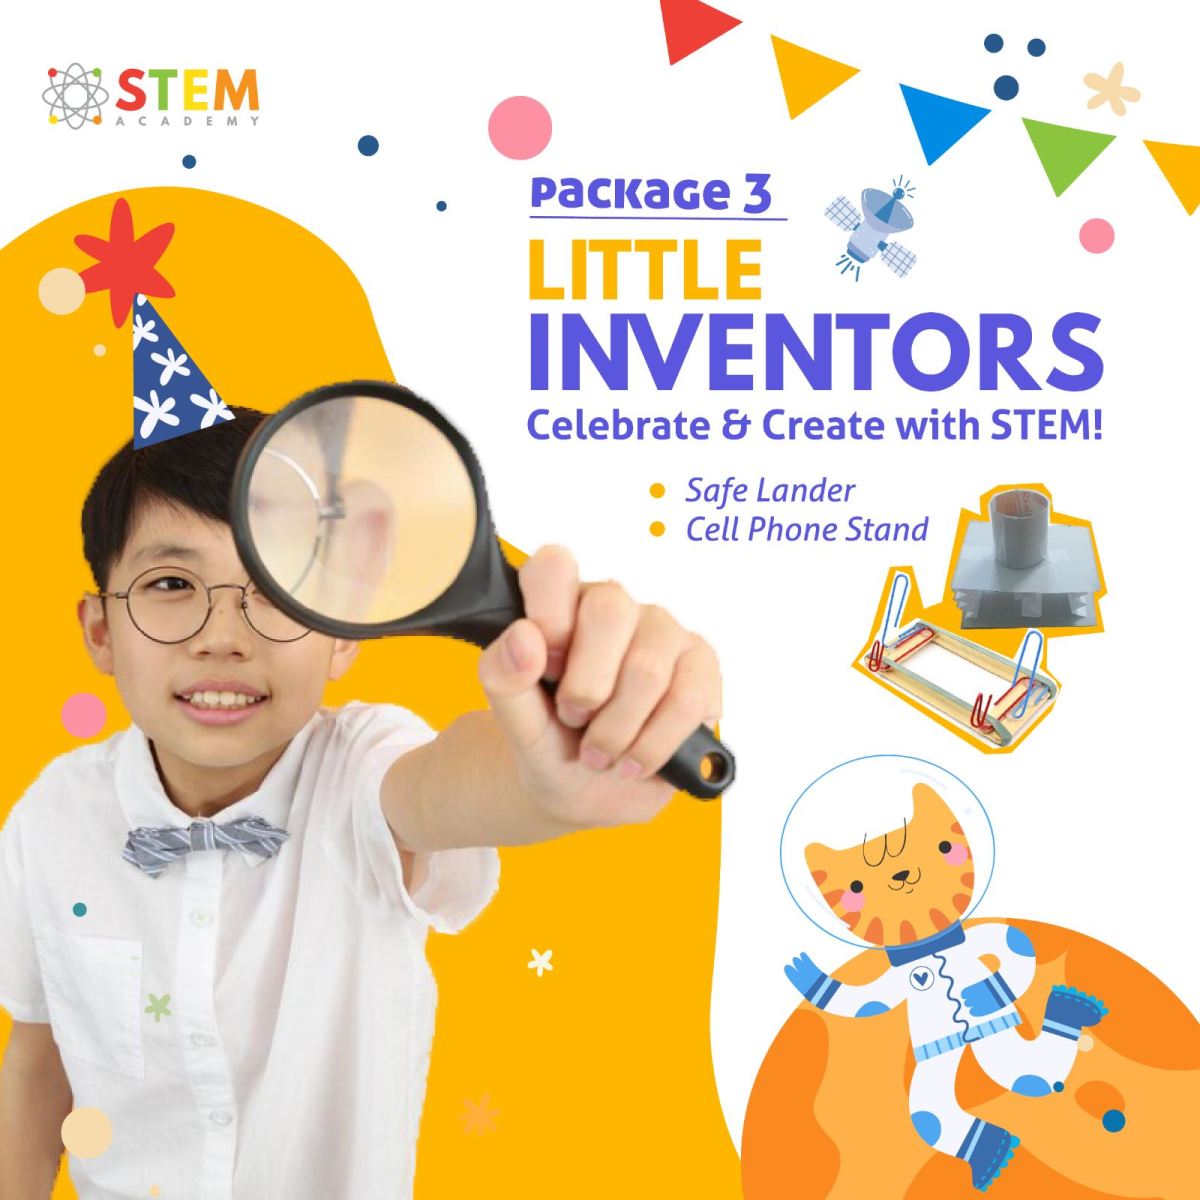 Little Inventors (15 pax/10pax)